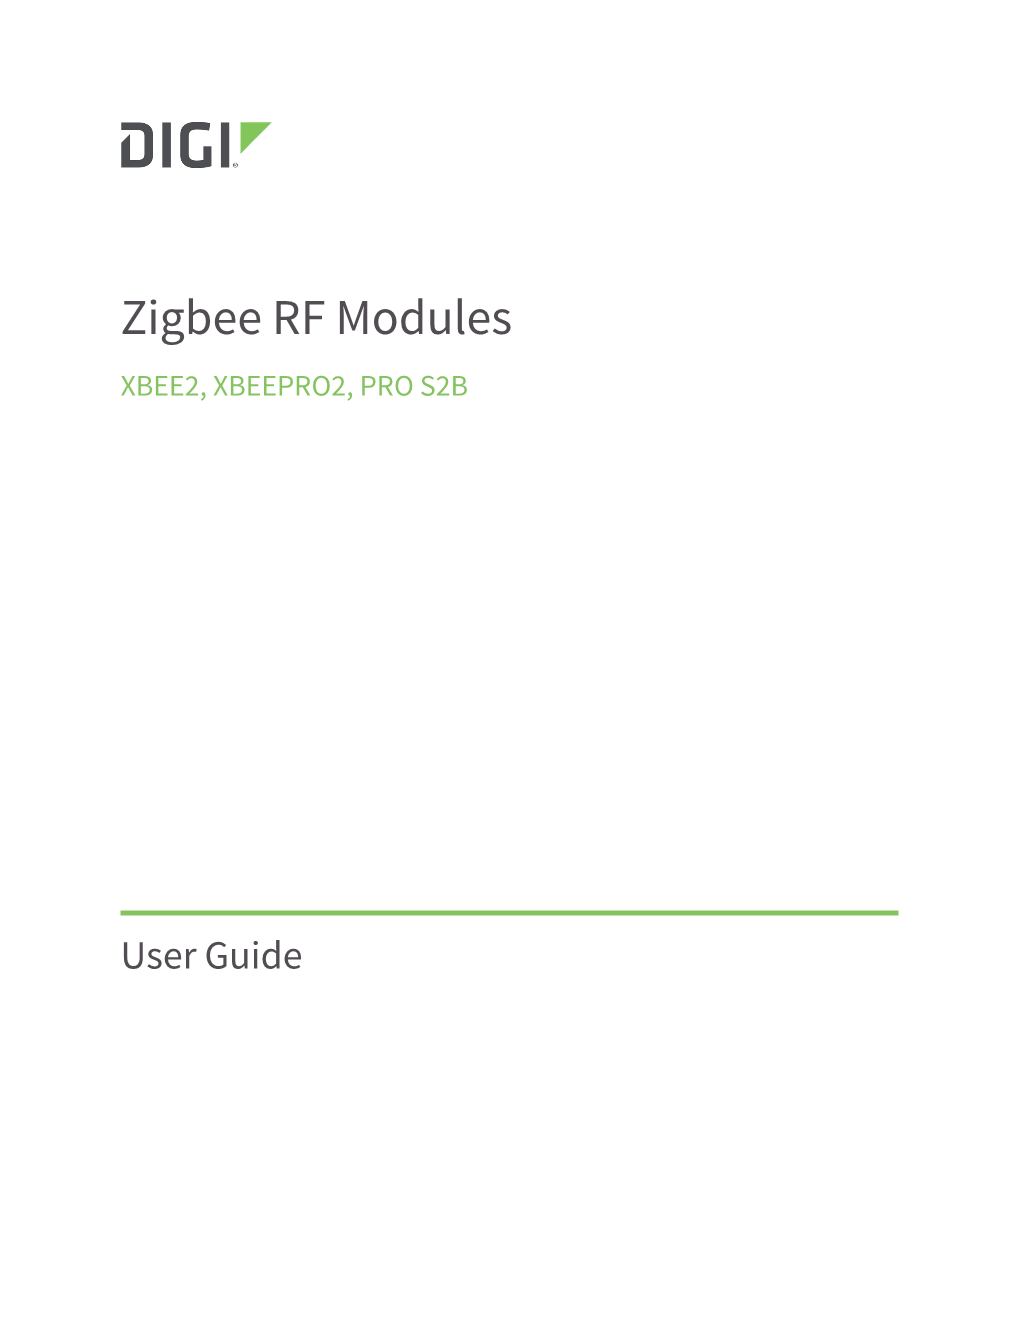 Zigbee RF Modules XBEE2, XBEEPRO2, PRO S2B